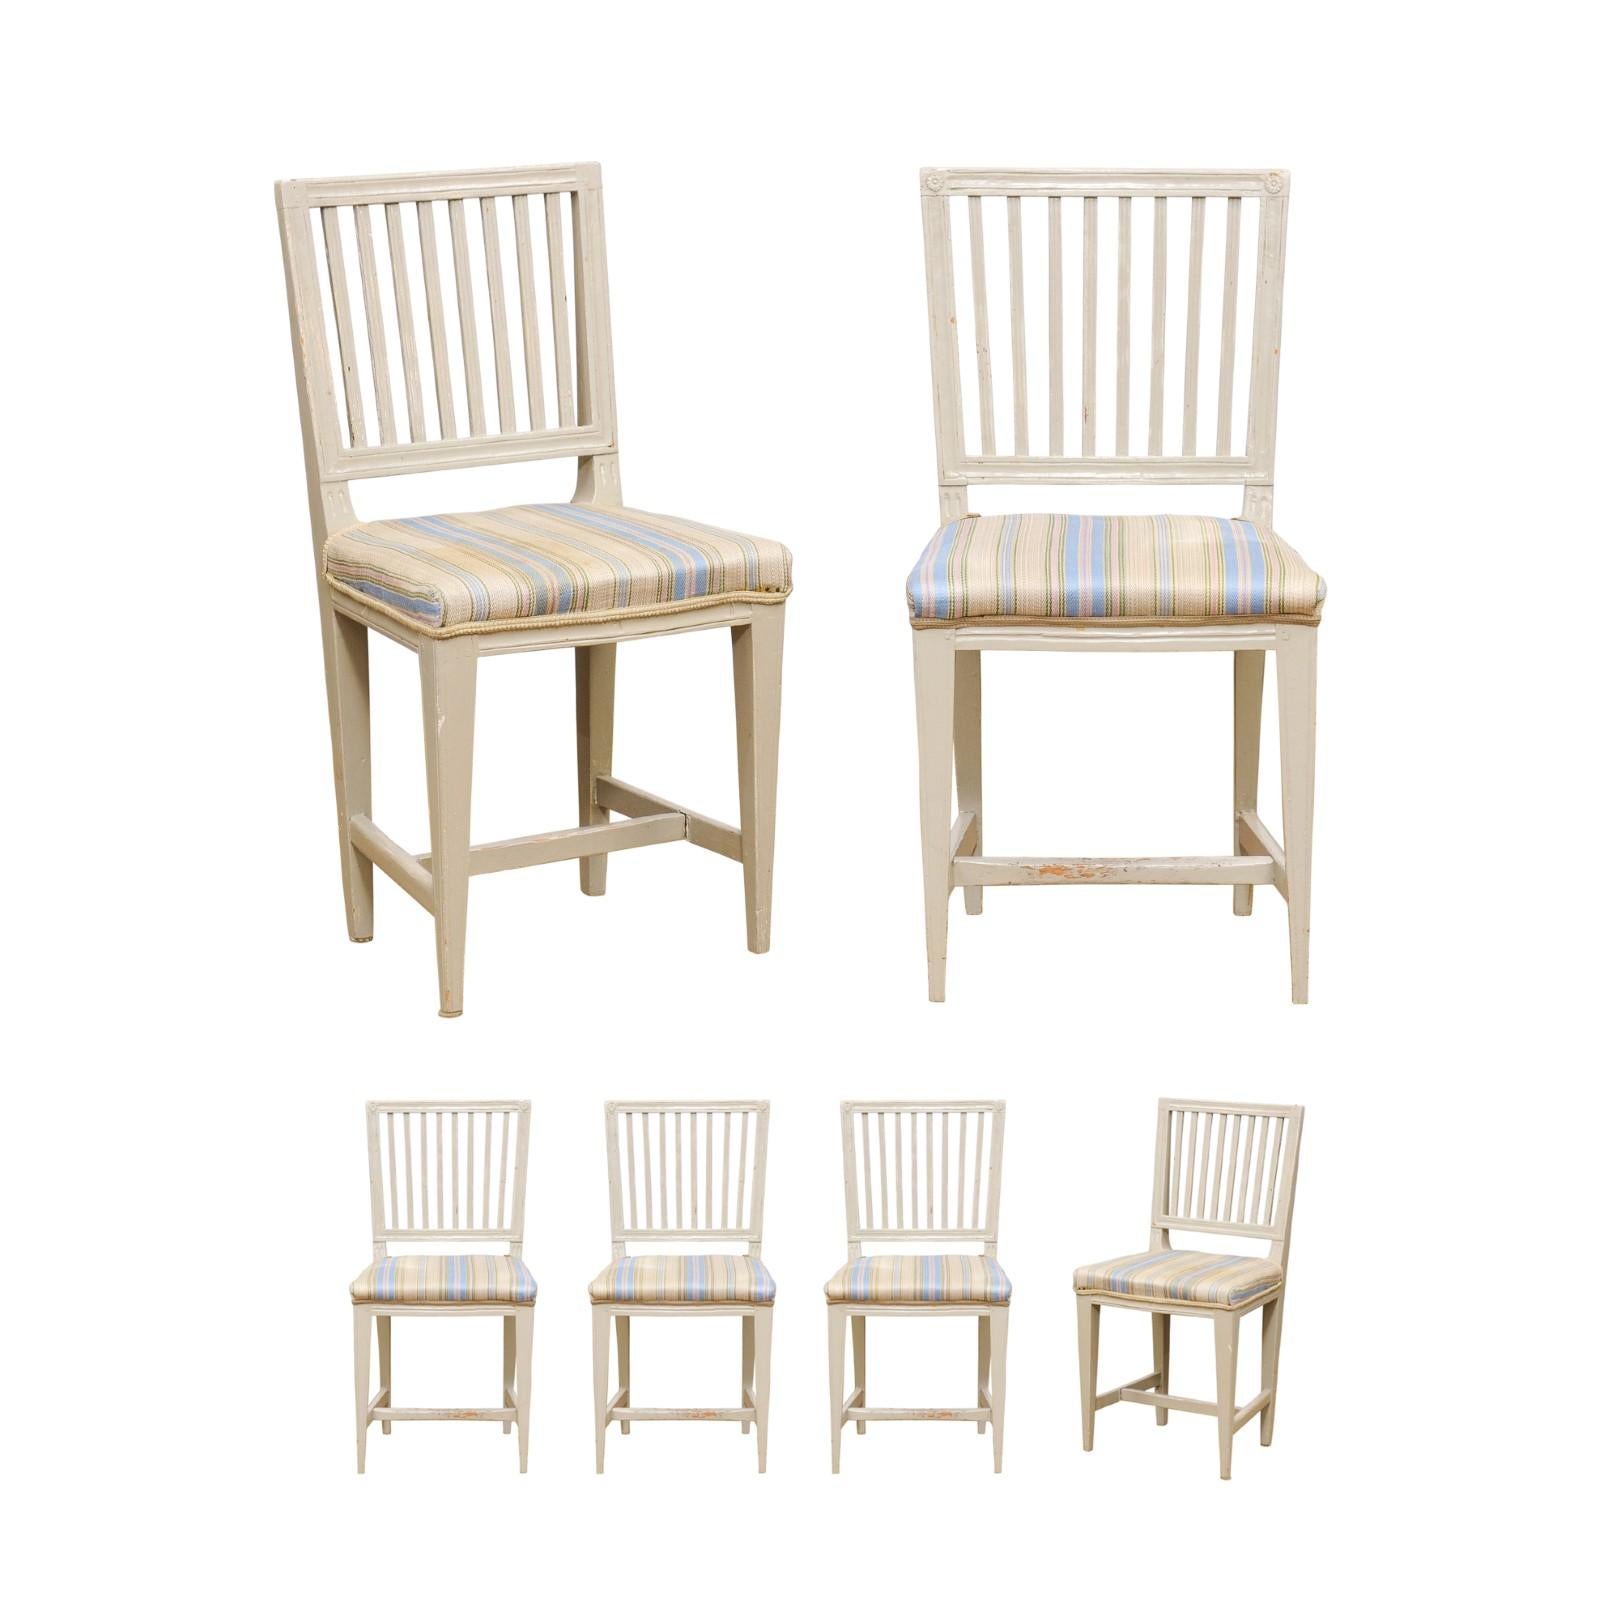 Ein Satz von sechs schwedischen Stühlen mit bemalter Holzlehne im Gustavianischen Stil aus der Mitte des 19. Jahrhunderts, mit verjüngten Beinen, geschnitzten Rosetten und gebrauchten Polstermöbeln. Dieser Satz von sechs Beistellstühlen wurde in den